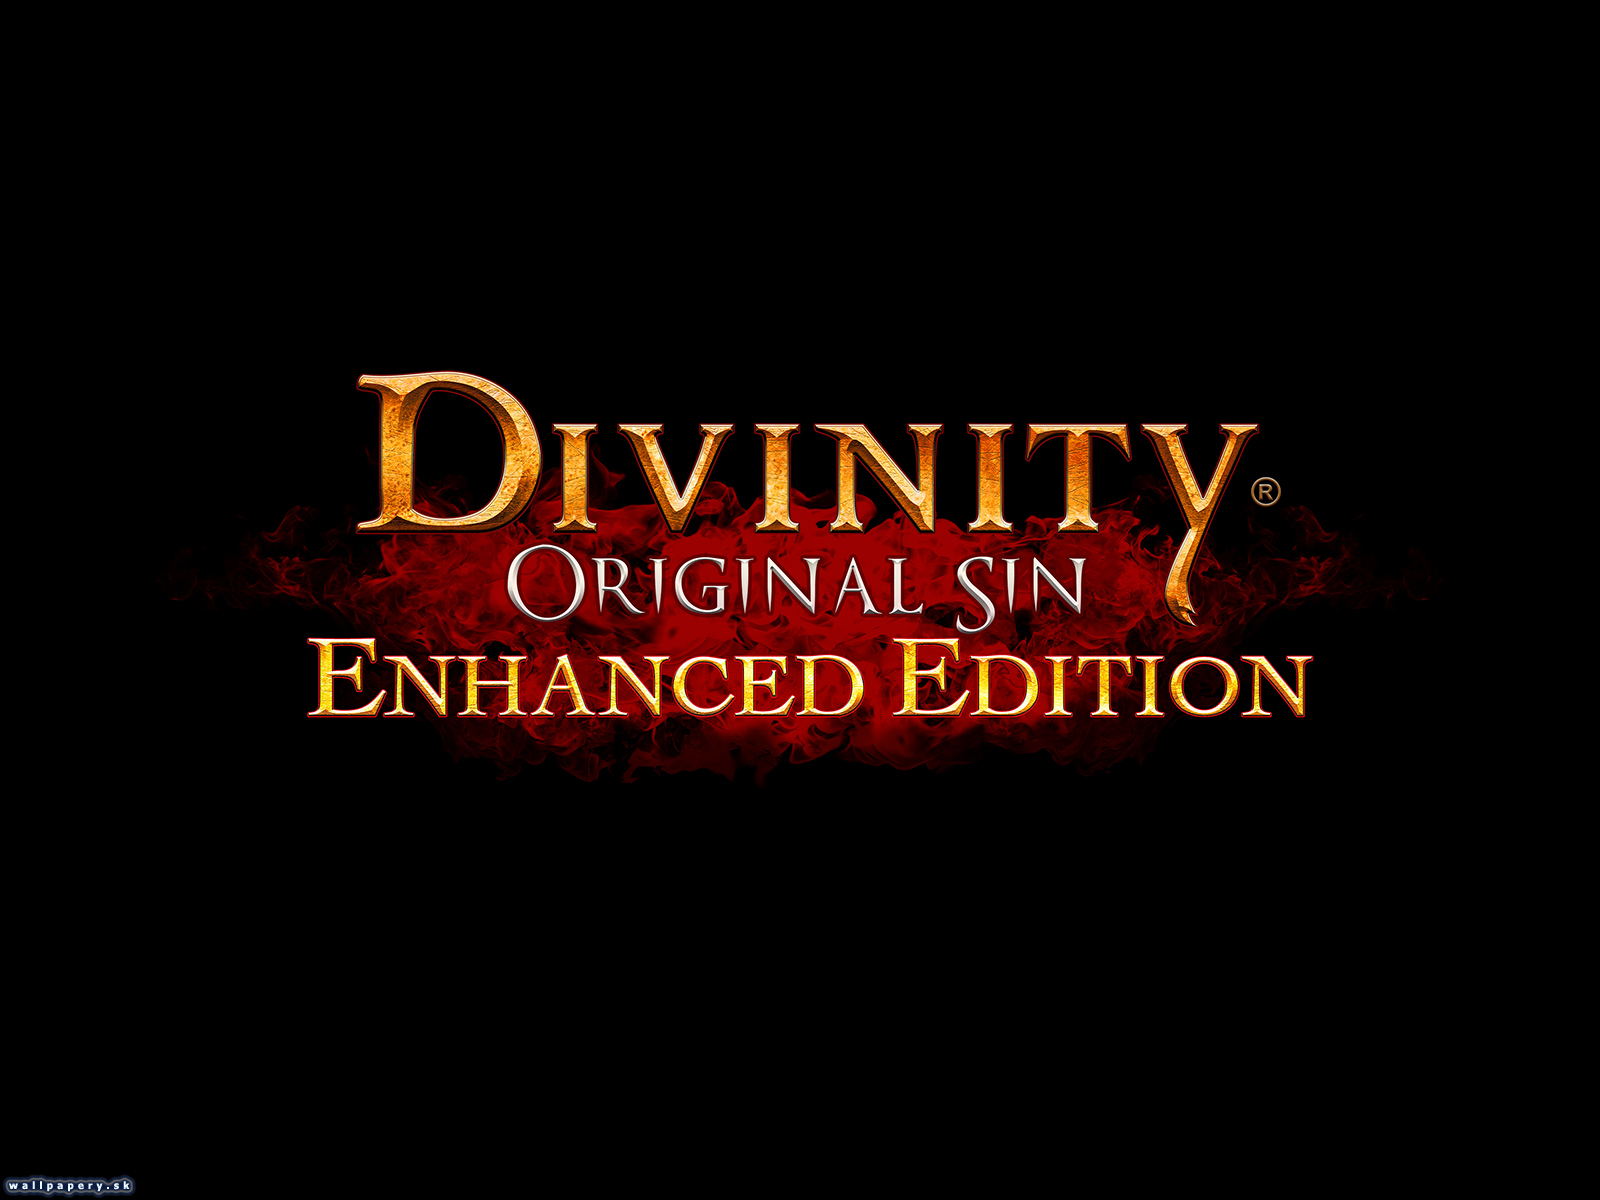 Divinity: Original Sin - Enhanced Edition - wallpaper 2